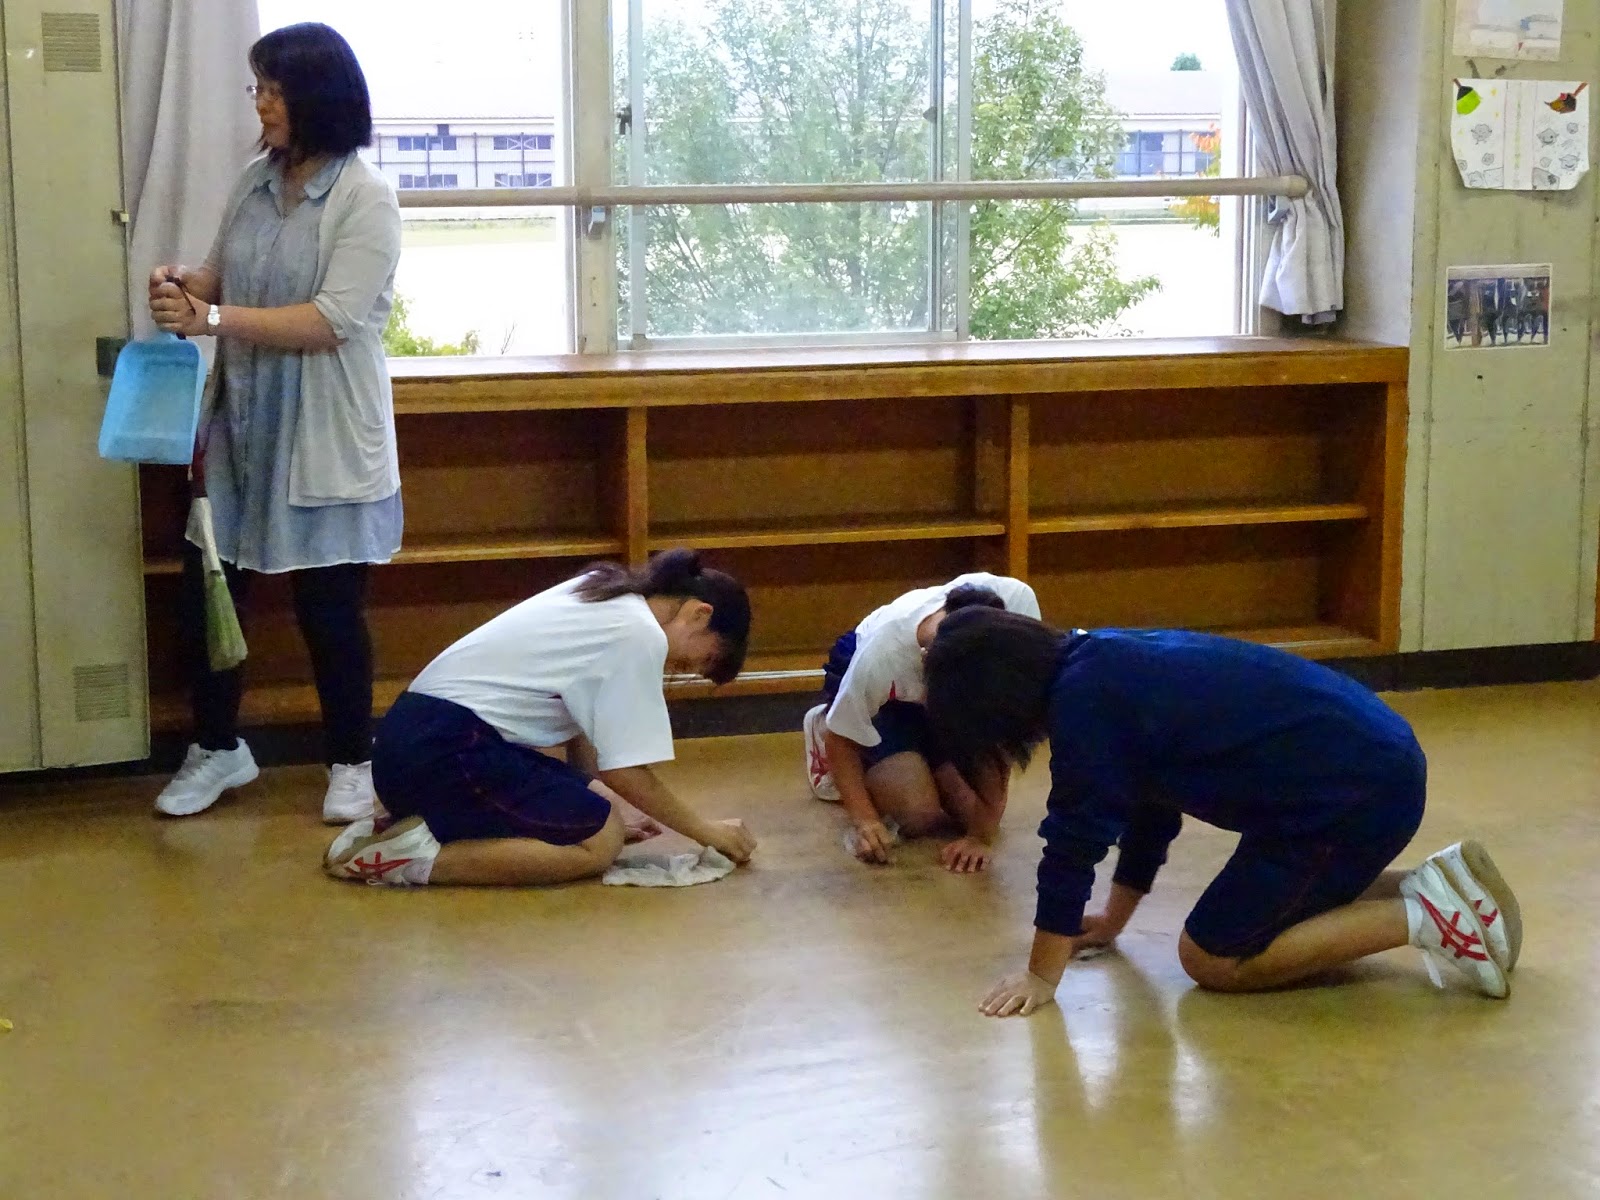 高畠四中 学校日誌: 床の汚れ落とし